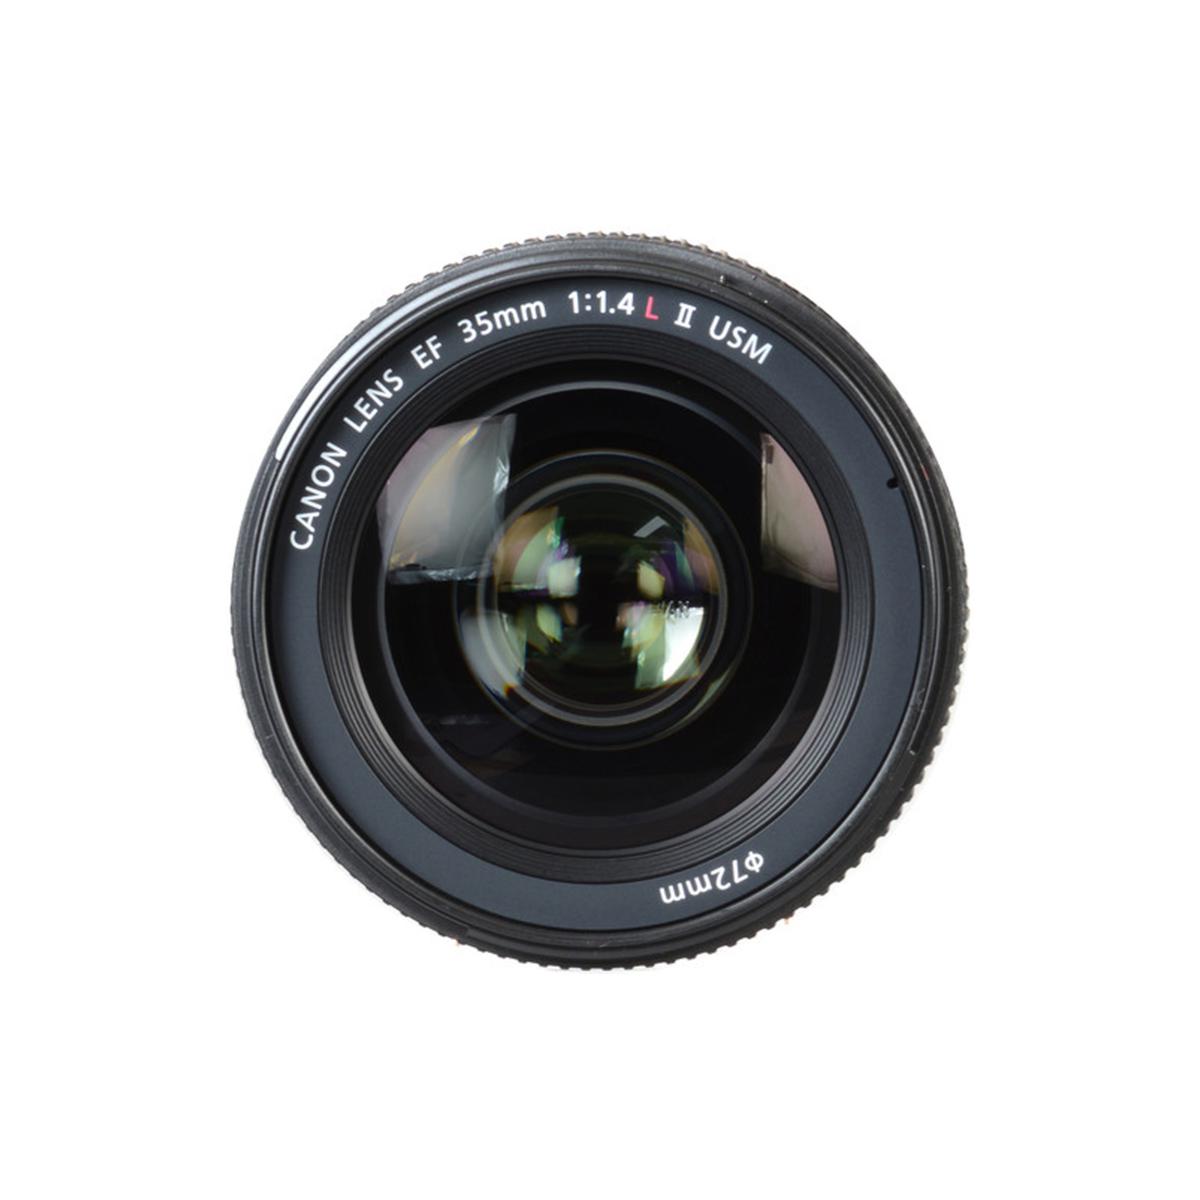 Canon EF 35mm f/1.4L II USM Lens Bundle